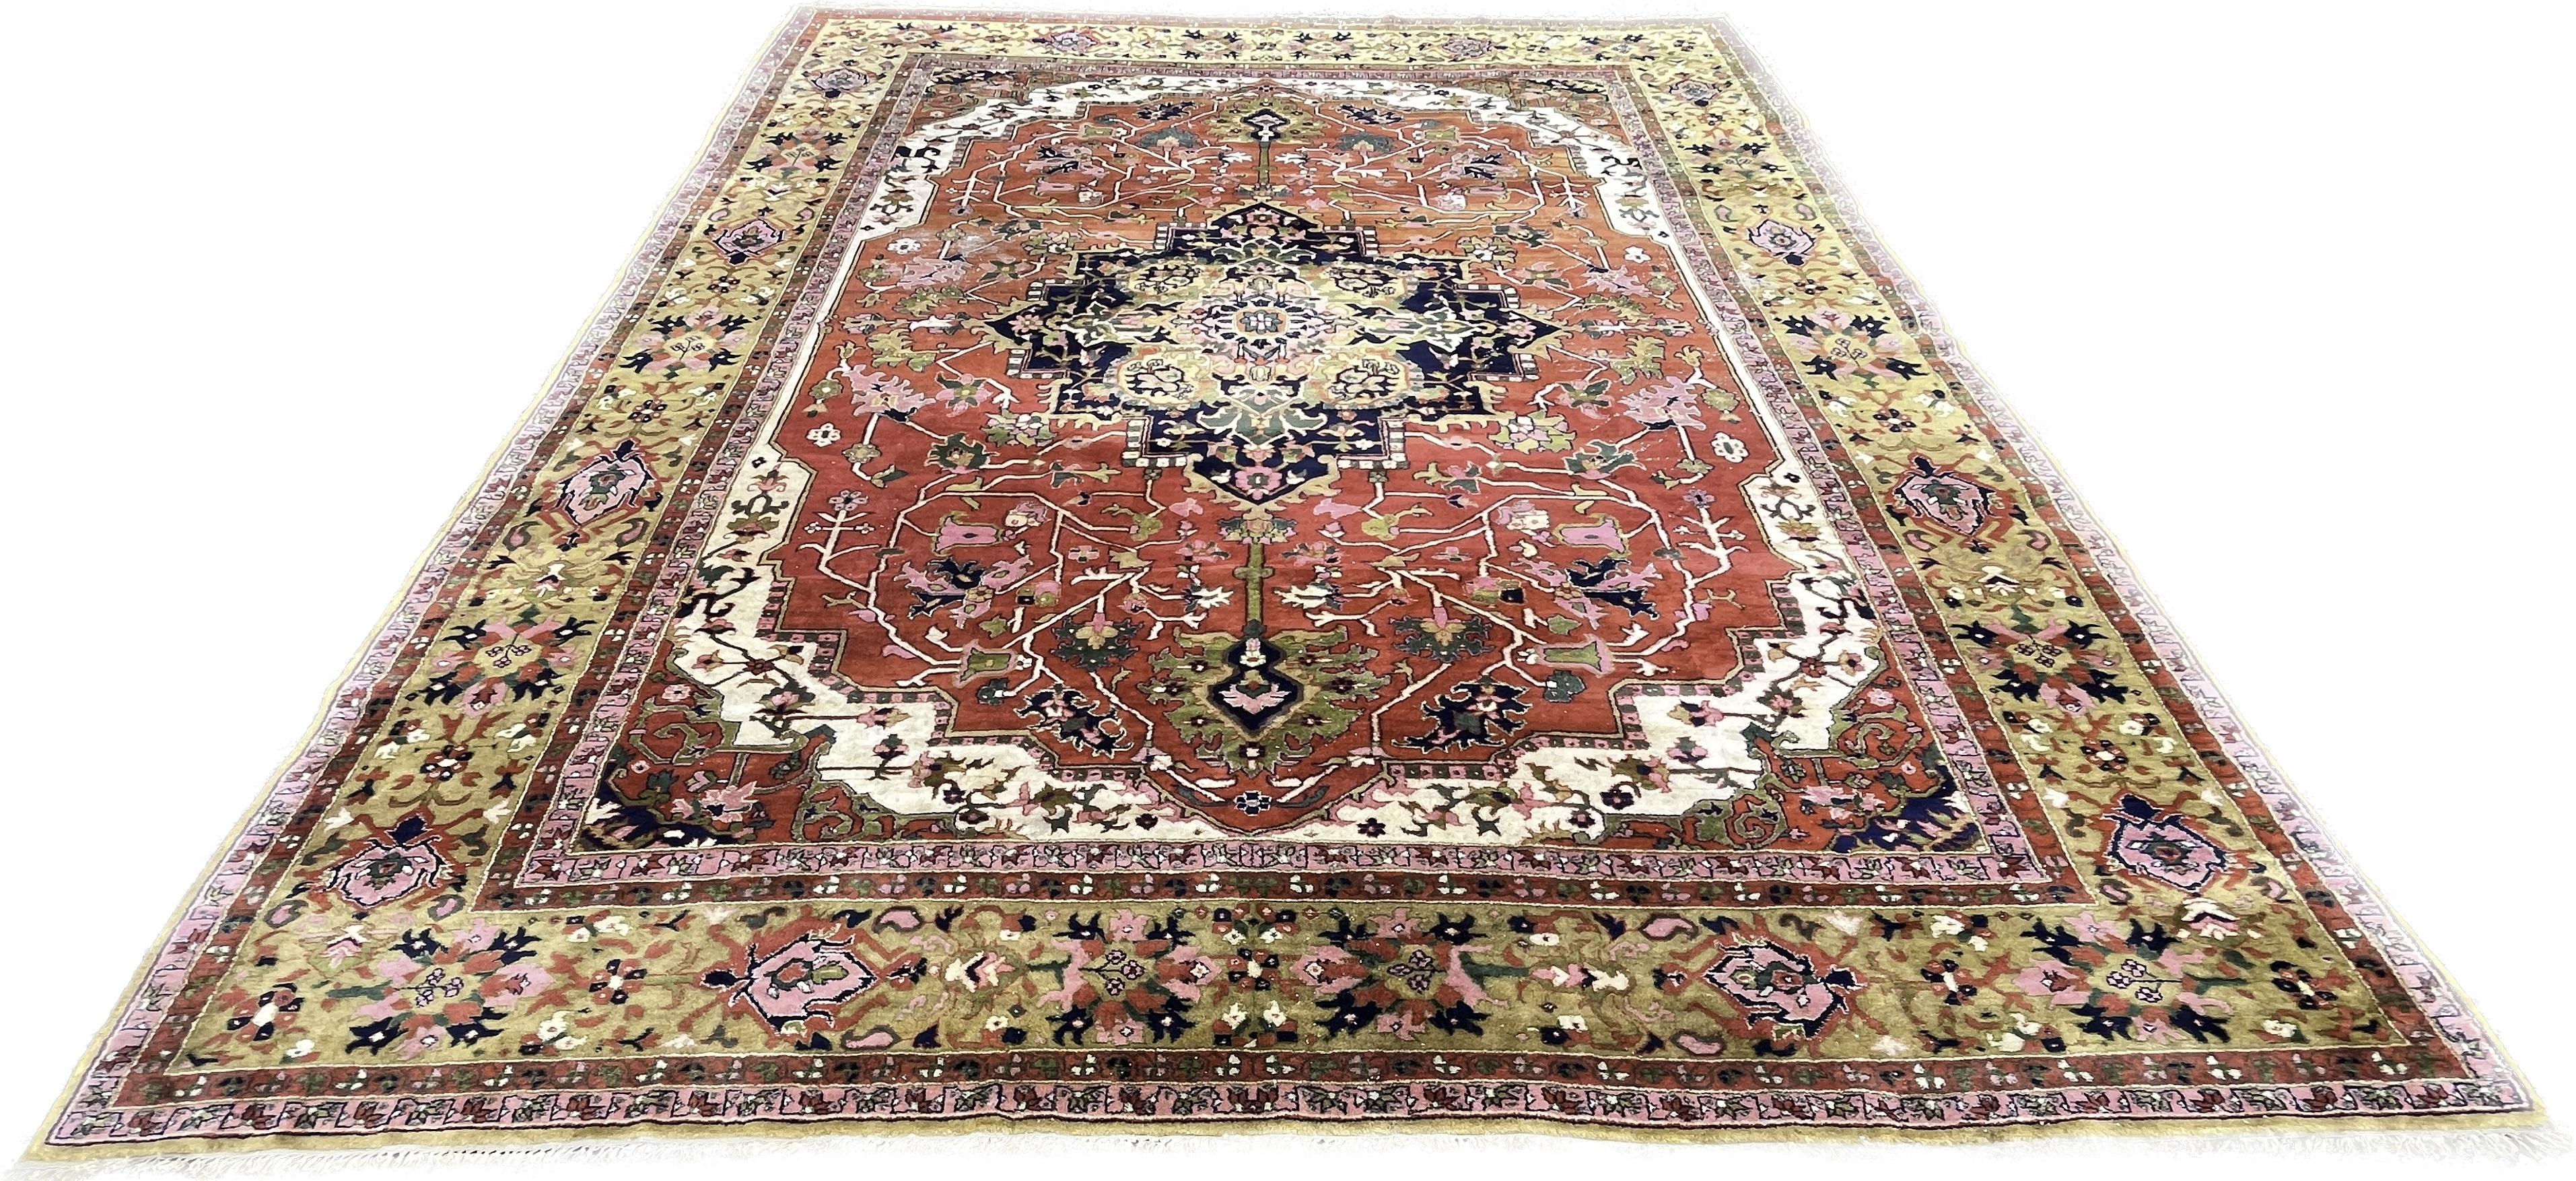 Moderner Teppich im Stil von Hériz, handgeknüpft in Indien um 1940.

Die vielen leuchtenden Farben, die für dieses Stück gewählt wurden, sollen miteinander kontrastieren und die Aufmerksamkeit auf ihre Form und Zusammensetzung lenken.
In der Mitte